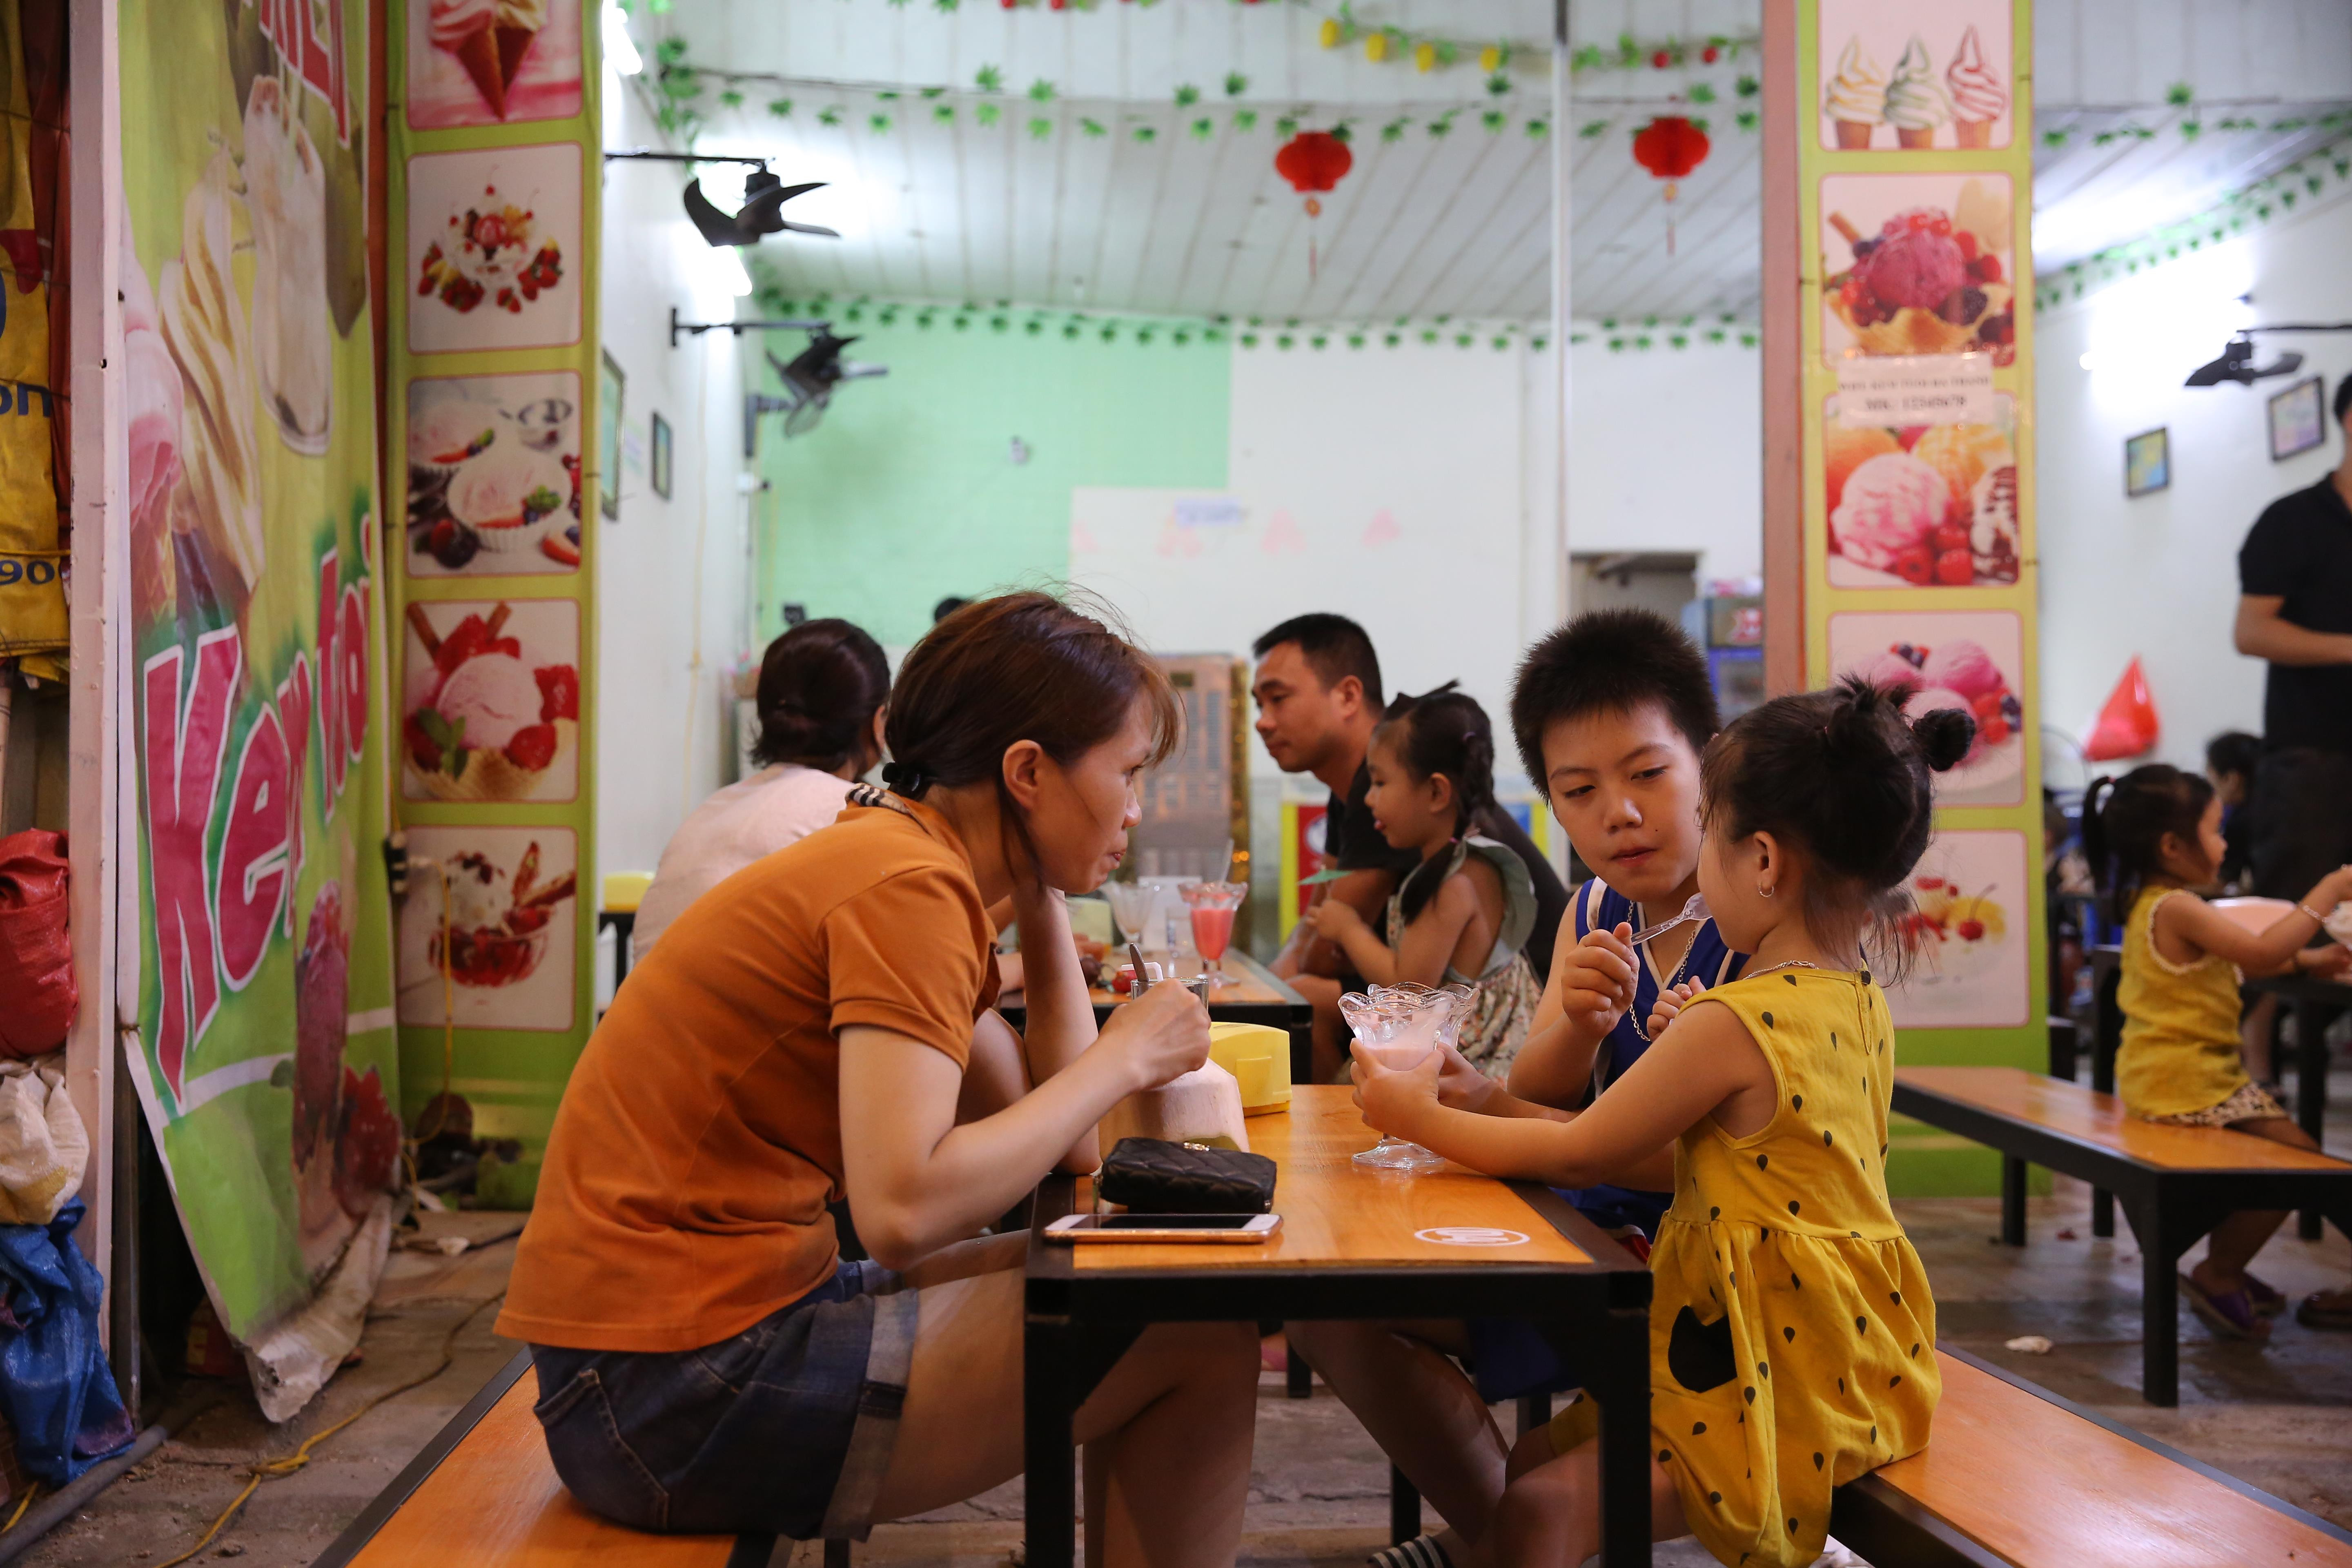 Vỉa hè trước khu vực chợ Quán Lau sẽ được bố trí các gian hàng kinh doanh nước giải khắt, đồ ăn vặt. Ảnh: Lâm Tùng